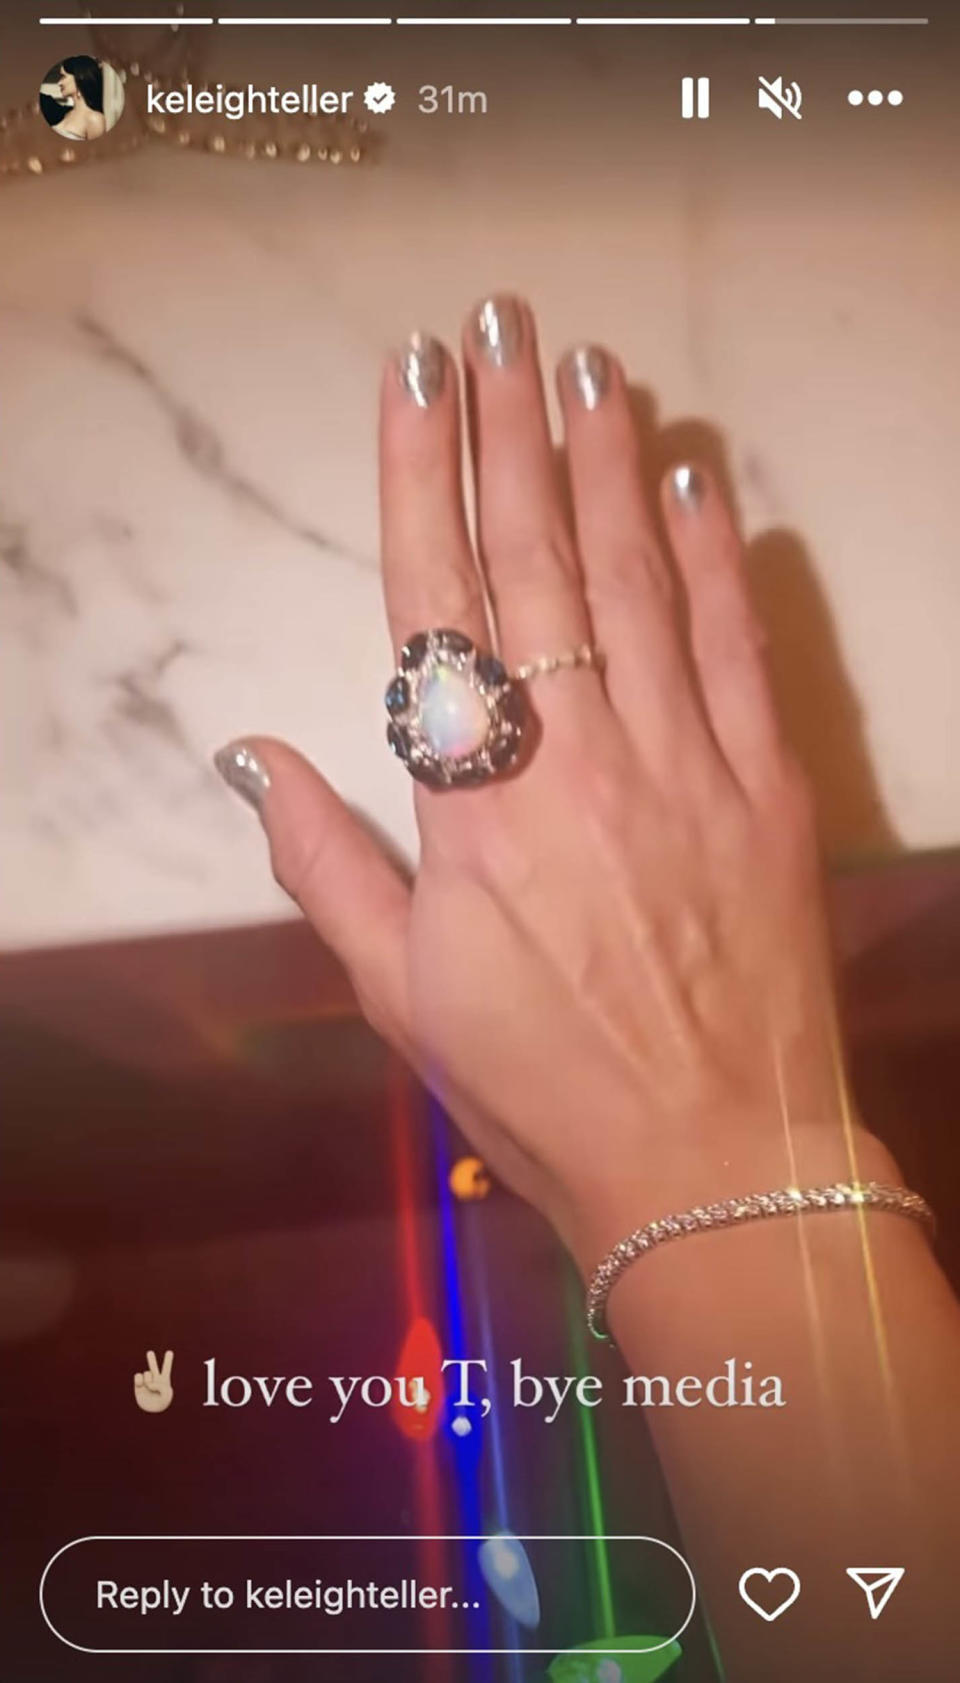 Sperry modeled Swift's ring in a video she shared in her Instagram story. (@keleighteller via Instagram)